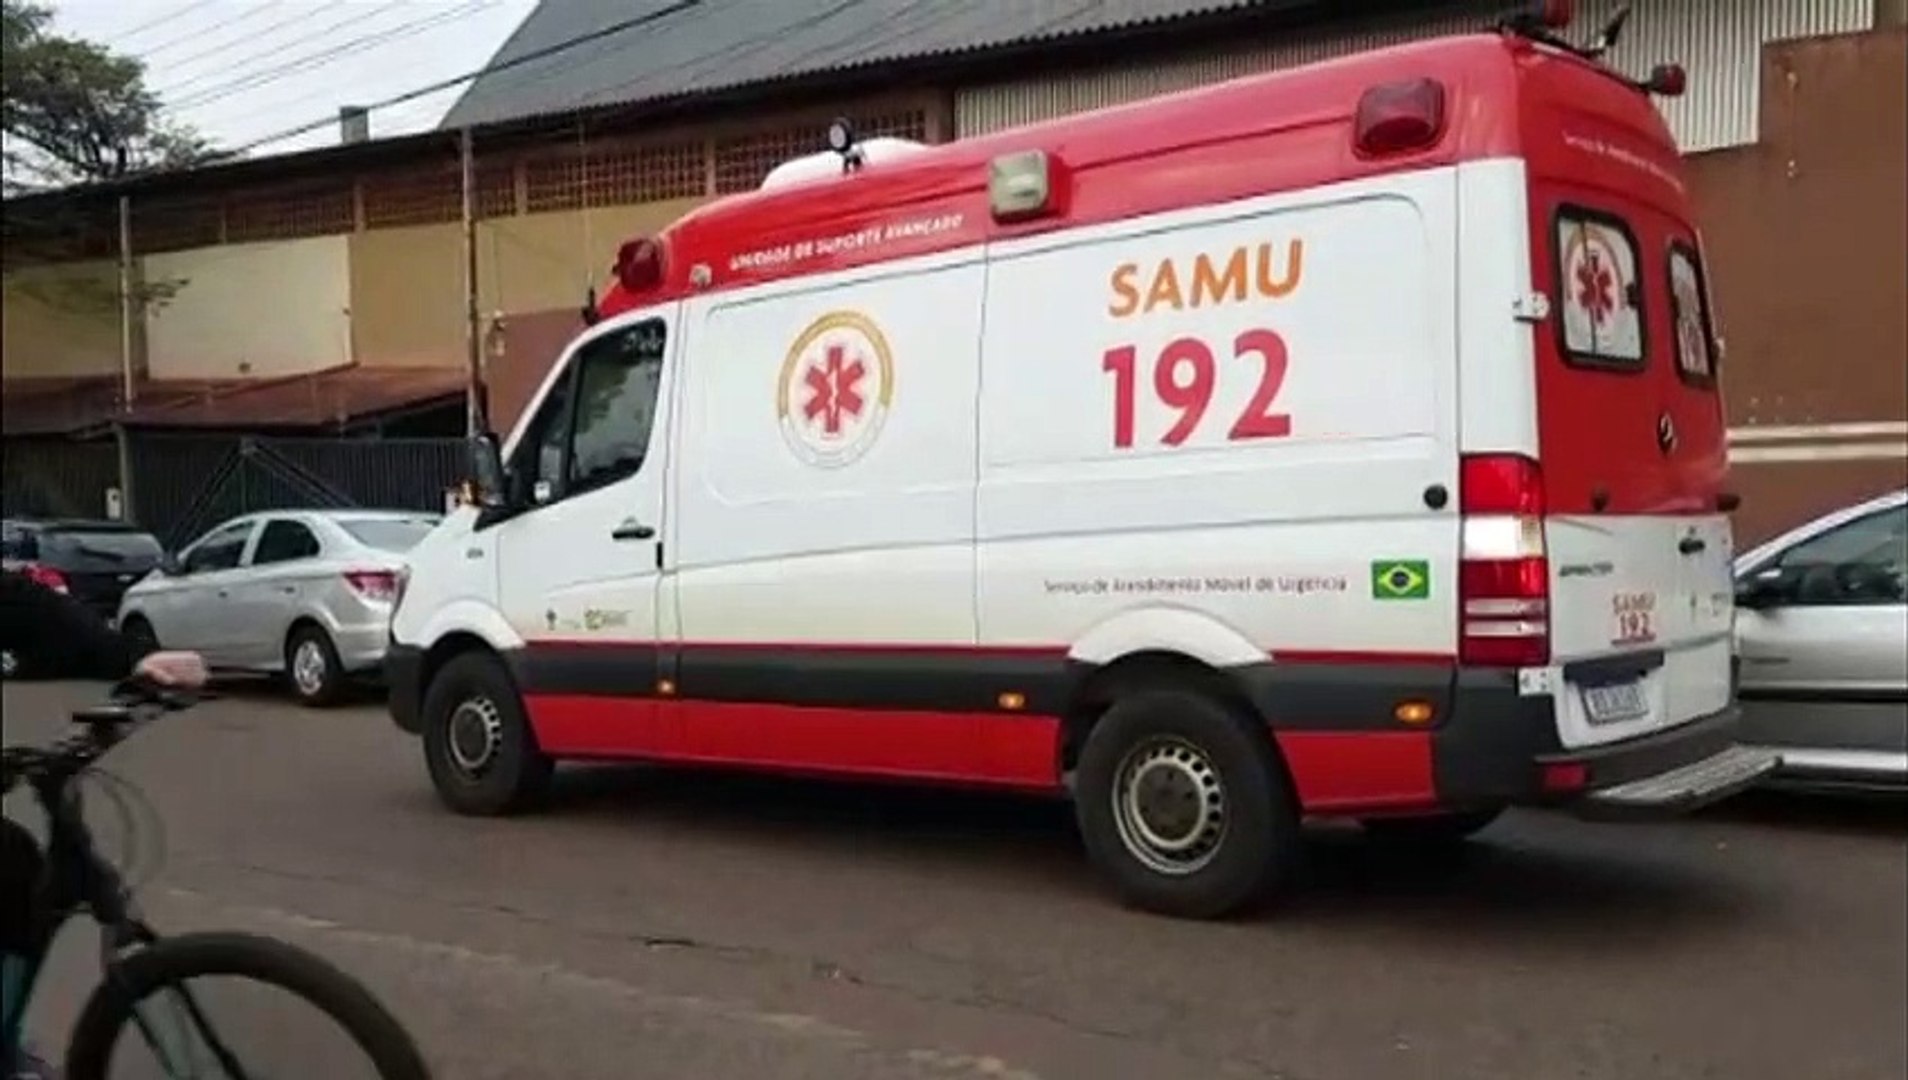 Vídeo: jogador sofre mal súbito e sai de ambulância desacordado na Europa